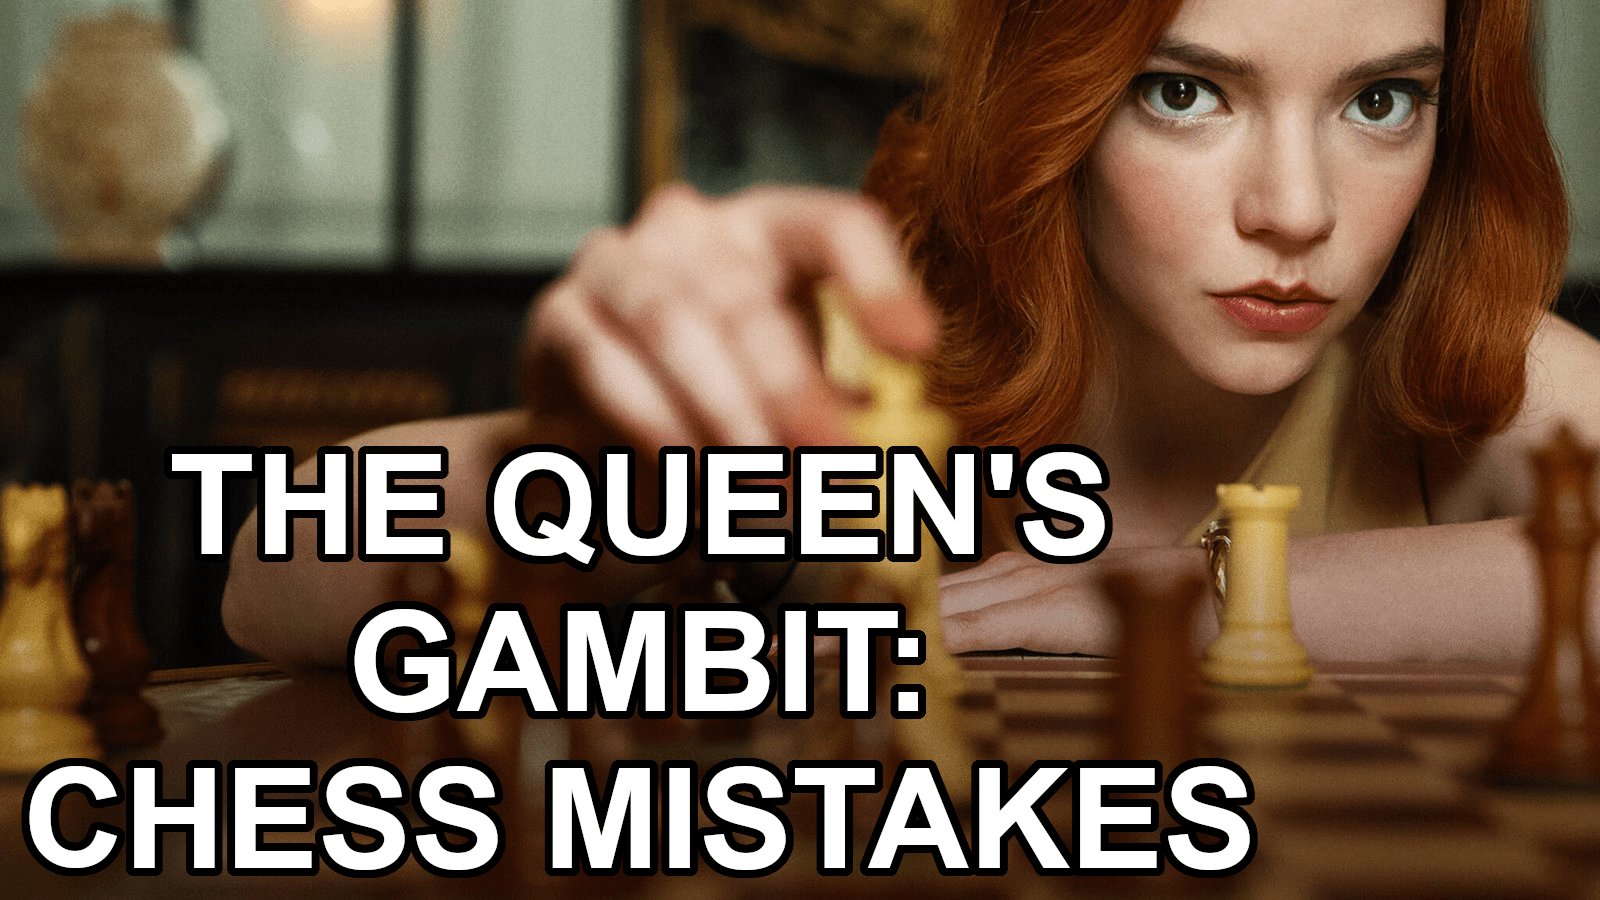 As Netflix's 'The Queen's Gambit' Captures Fans, Chess App